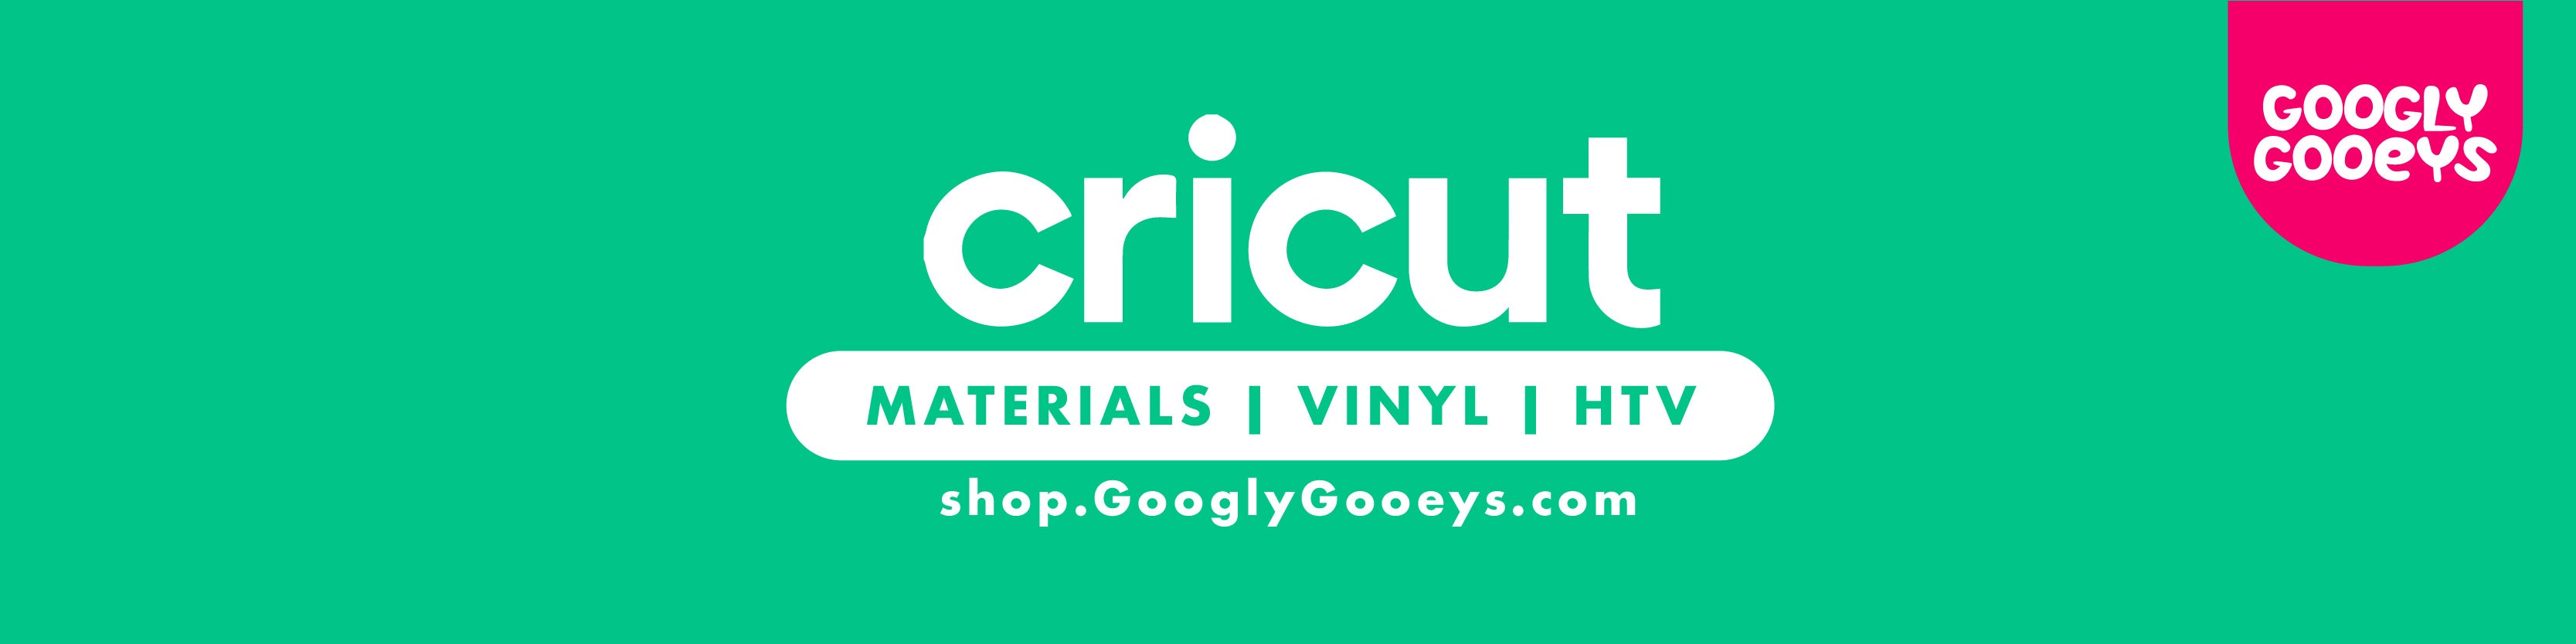 Cricut Materials, Vinyl, HTV, Iron-on